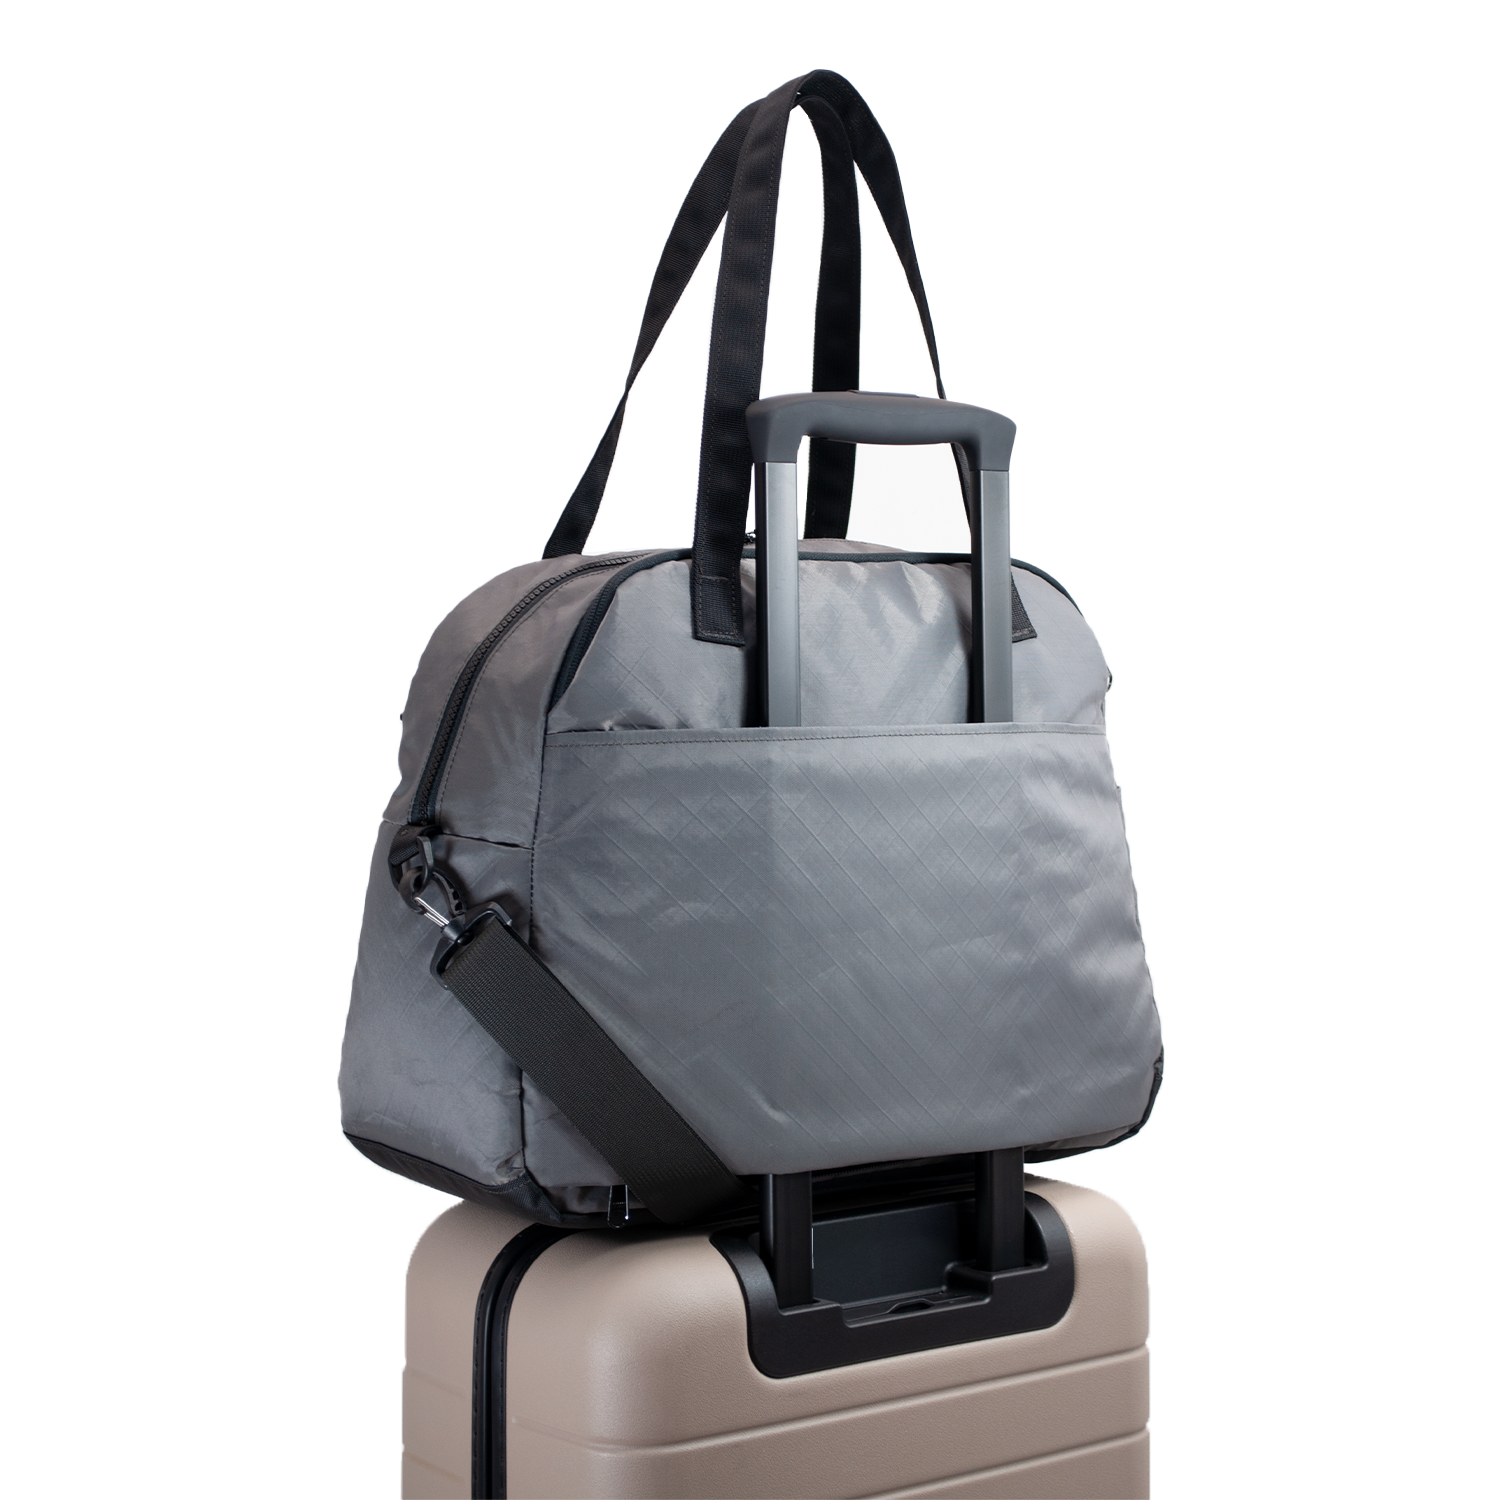 Flowfold Downeast Weekender Bag with Luggage